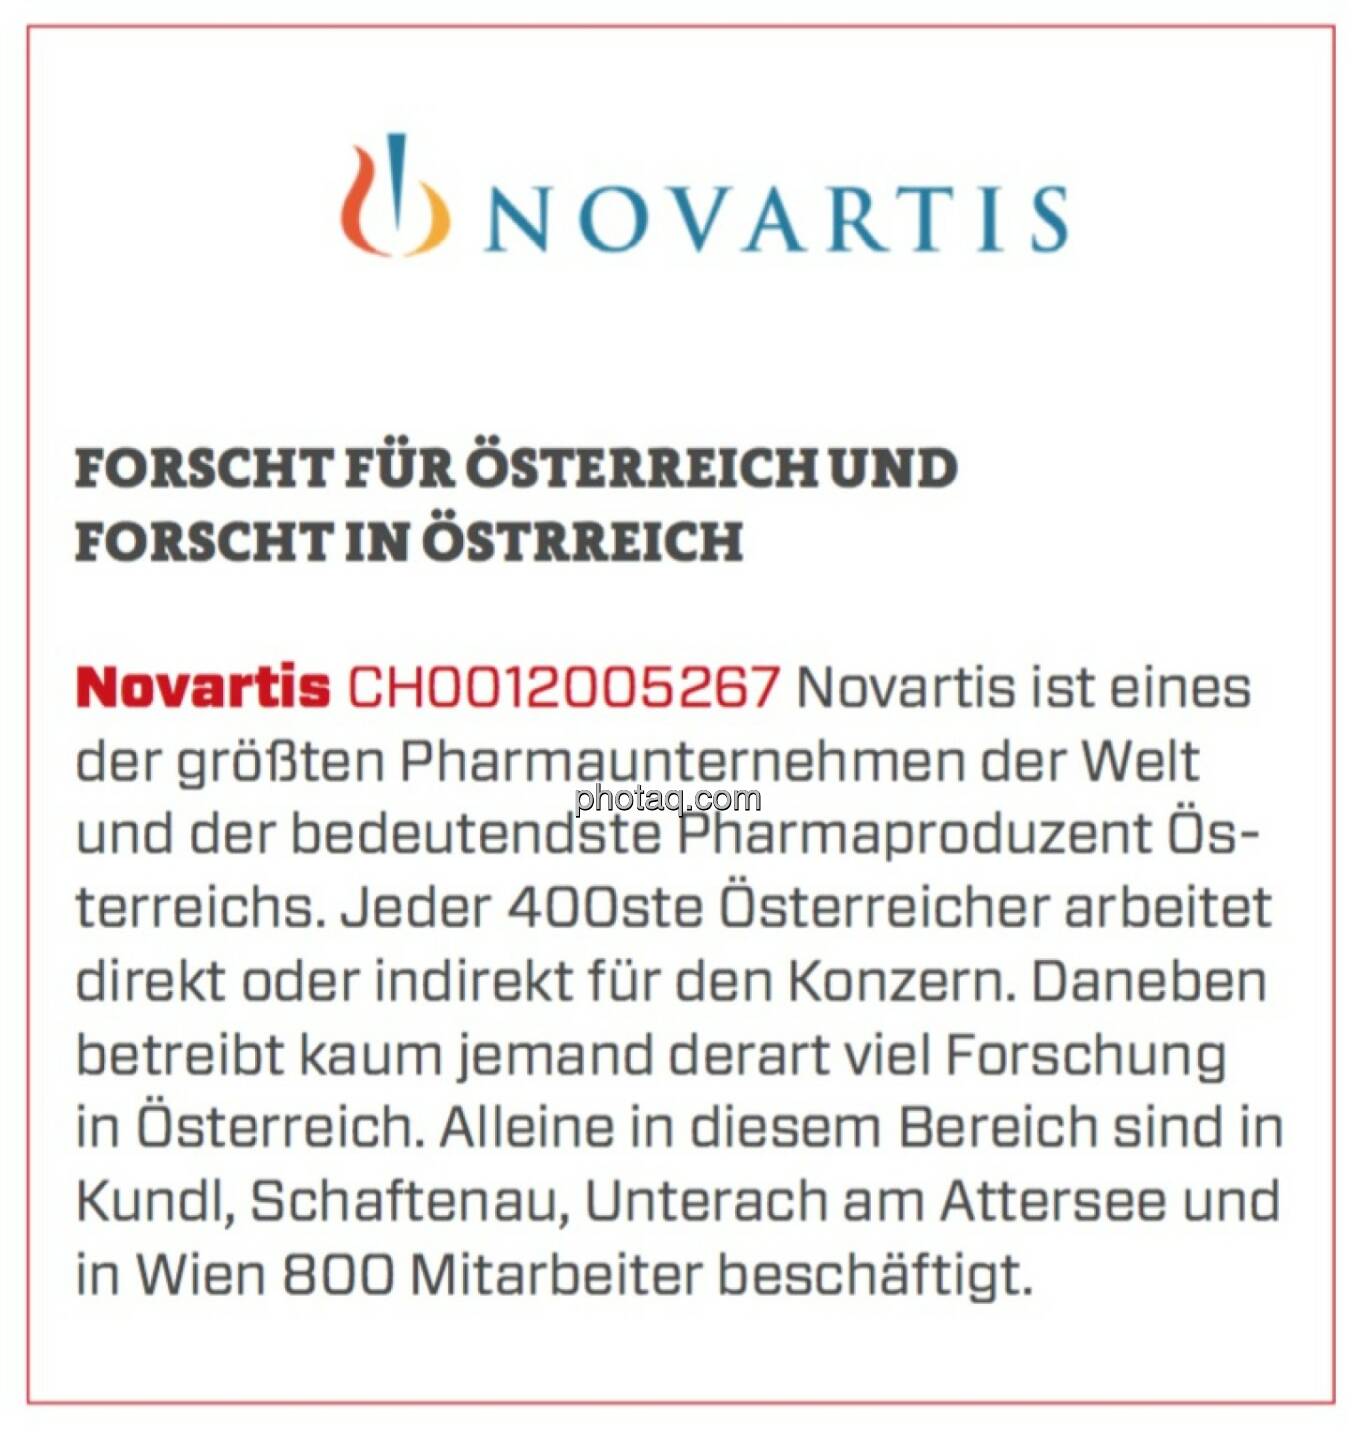 Novartis - Forscht für Österreich und forscht in Österreich: Novartis ist eines der größten Pharmaunternehmen der Welt und der bedeutendste Pharmaproduzent Österreichs. Jeder 400ste Österreicher arbeitet direkt oder indirekt für den Konzern. Daneben betreibt kaum jemand derart viel Forschung in Österreich. Alleine in diesem Bereich sind in Kundl, Schaftenau, Unterach am Attersee und in Wien 800 Mitarbeiter beschäftigt. 